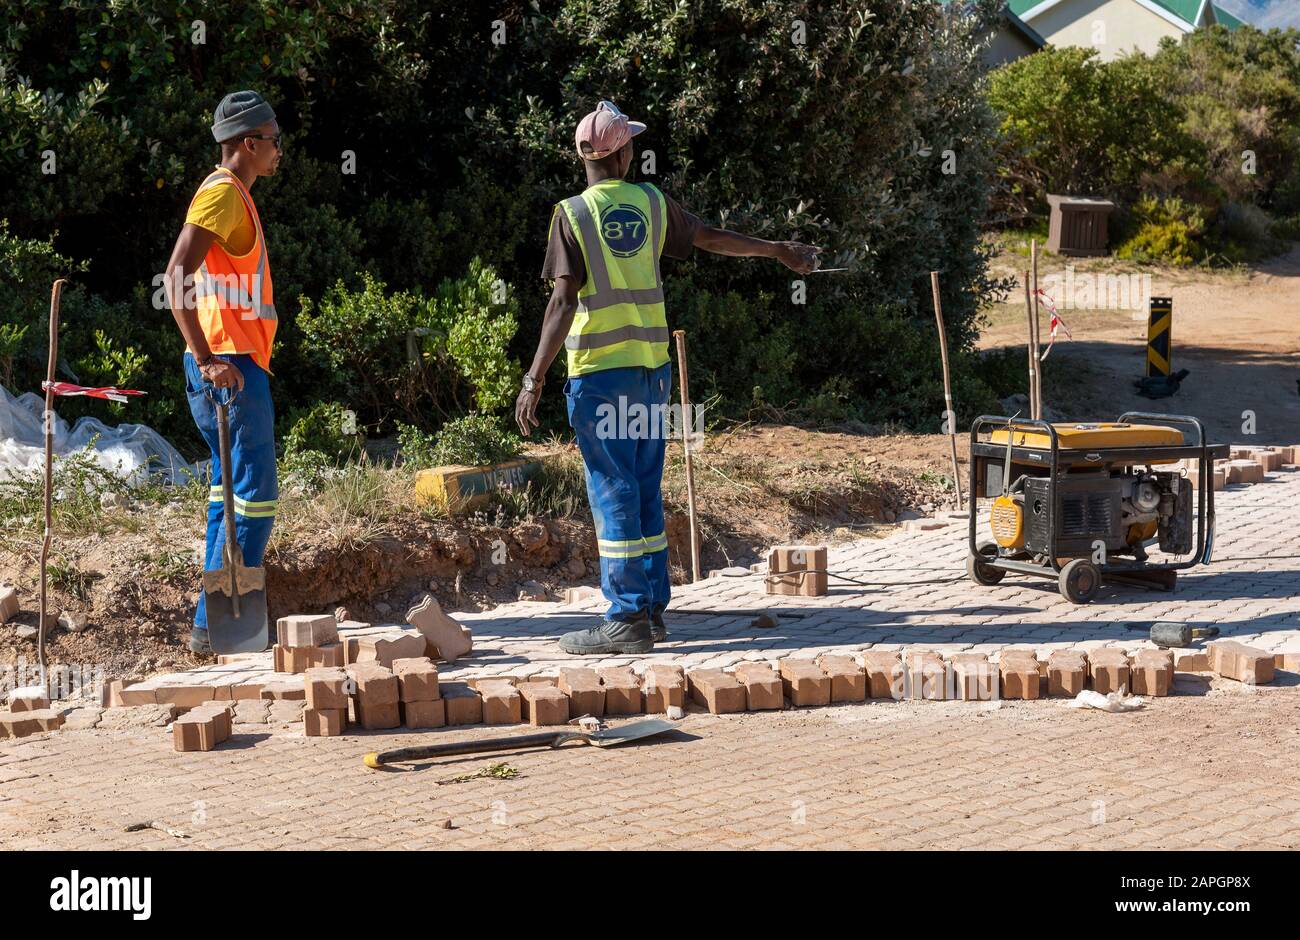 Rooiels, Capo Occidentale, Sud Africa. Dicembre 2019. Lavoratori che posano una strada di mattoni nella piccola frazione di Rooiels. Foto Stock